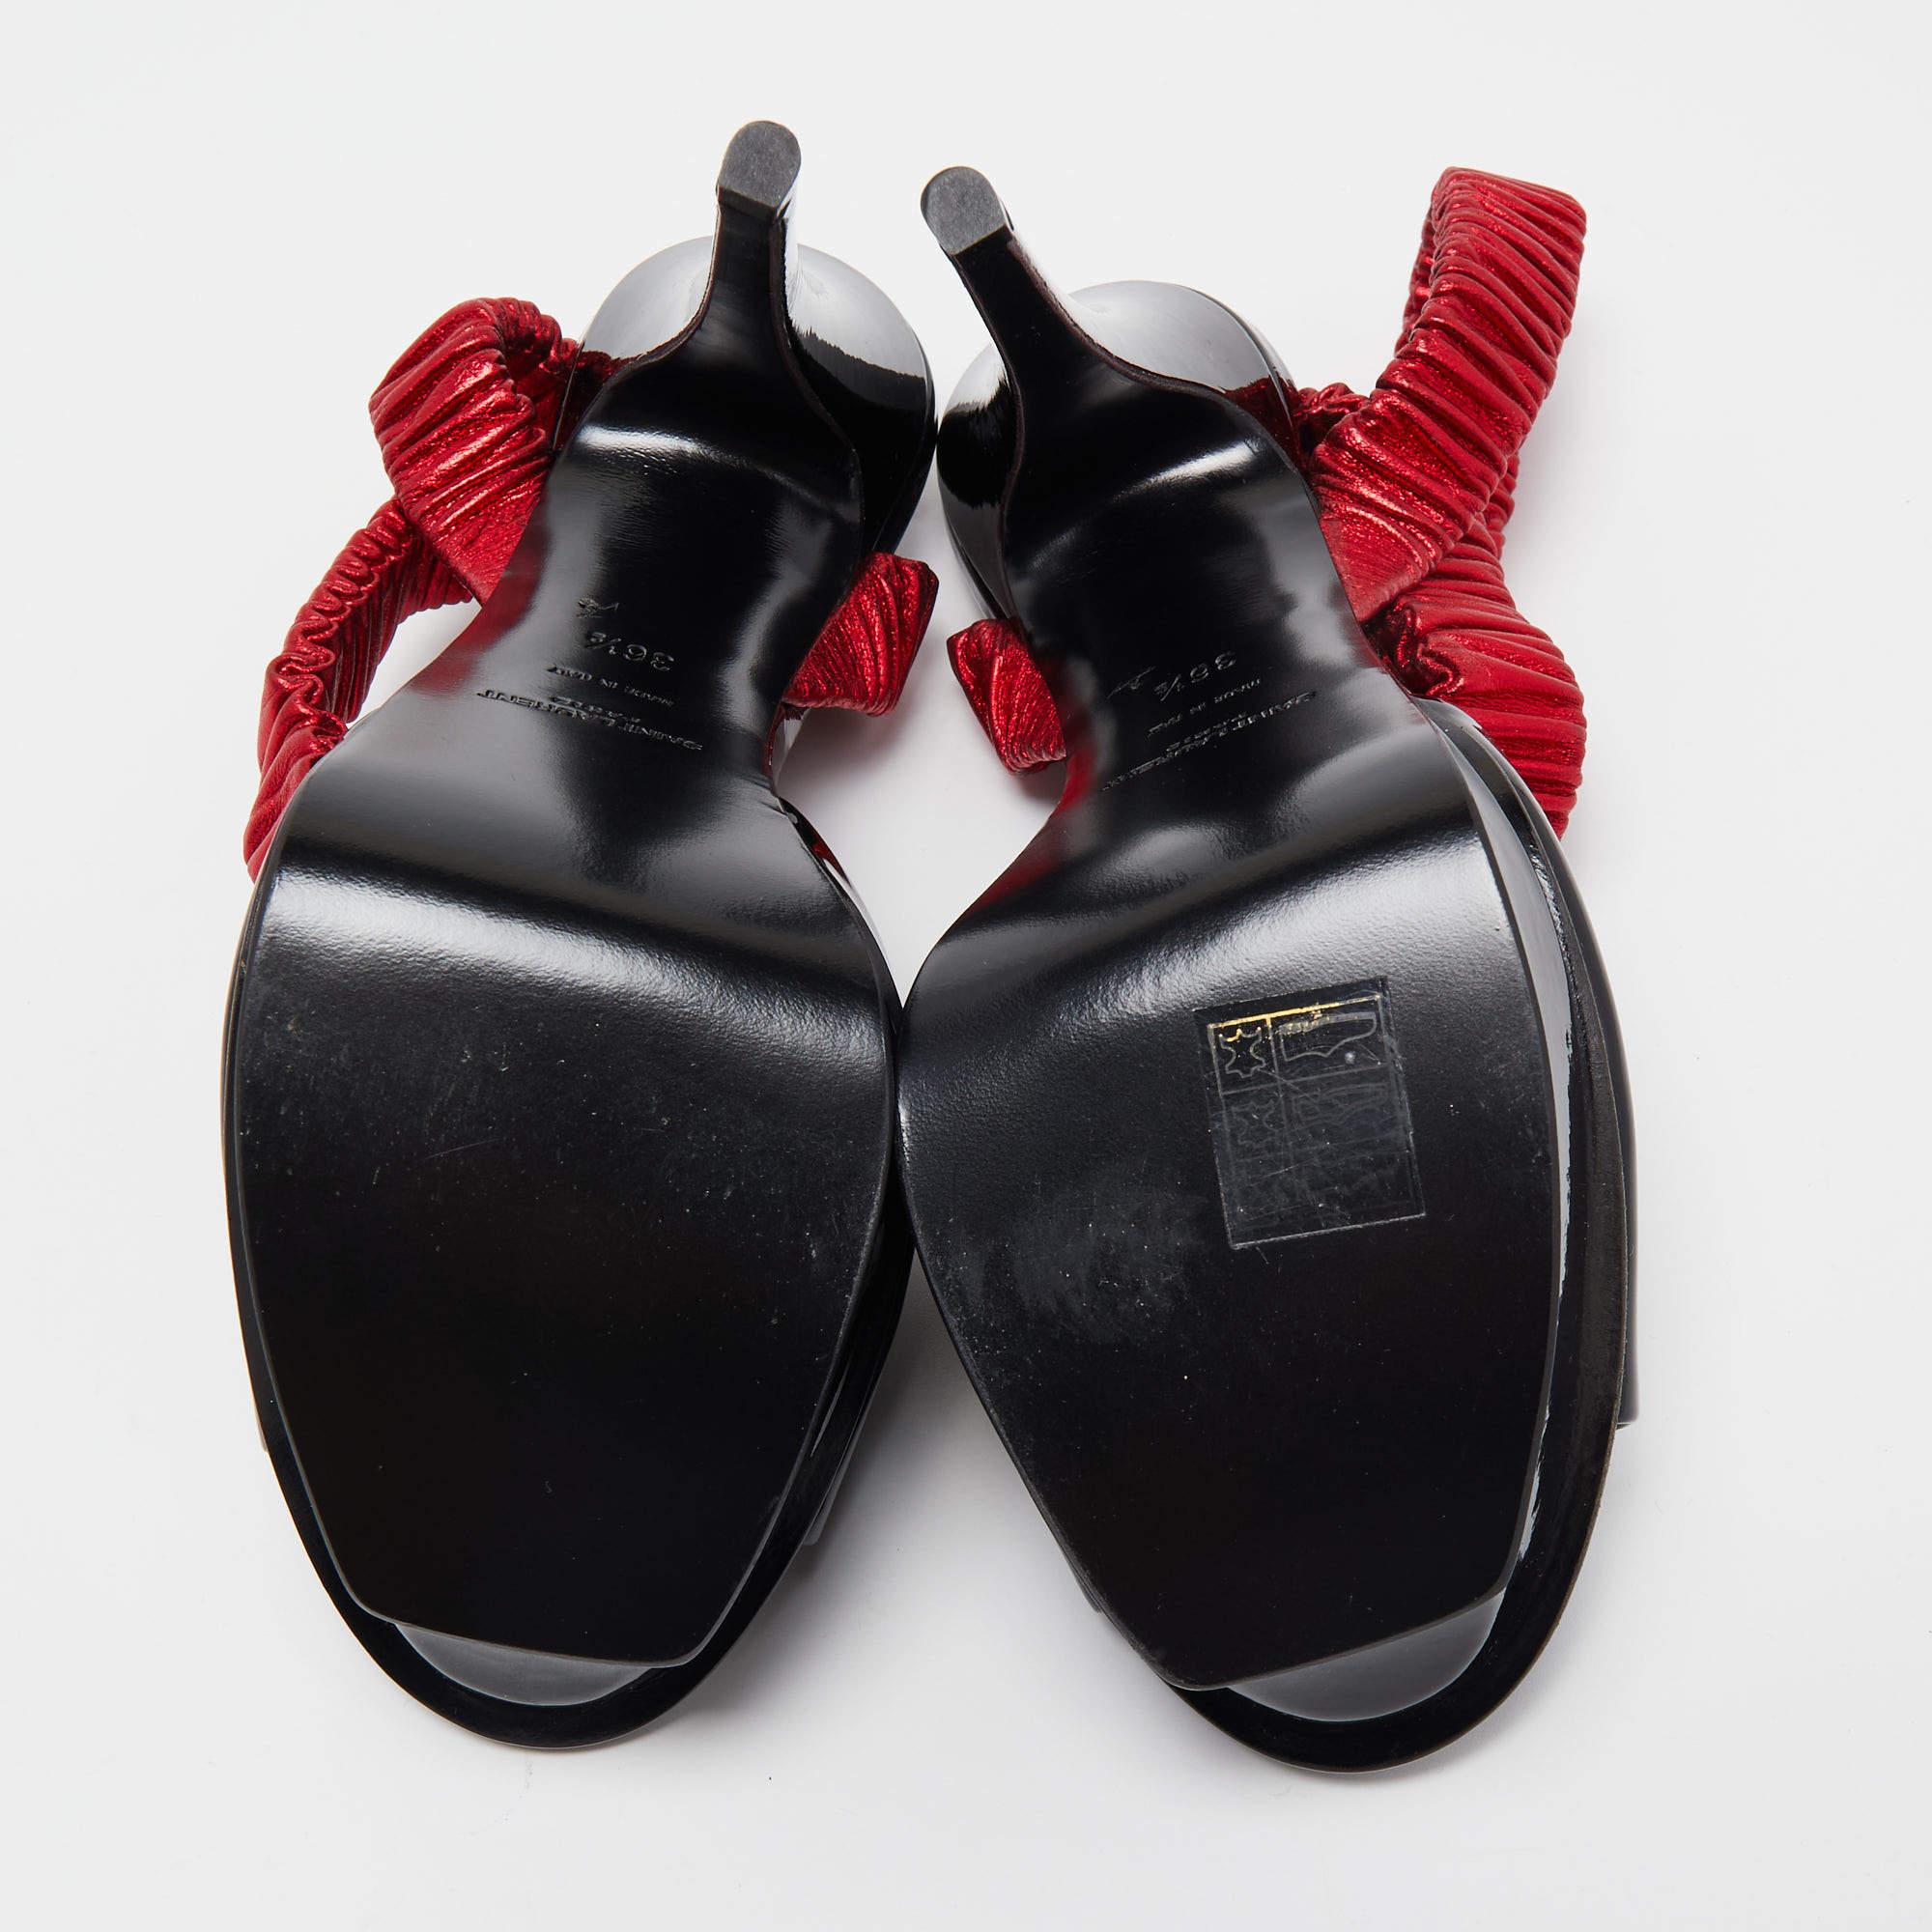 Saint Laurent Black Patent Leather Platform Ankle Wrap Sandals Size 36.5 4